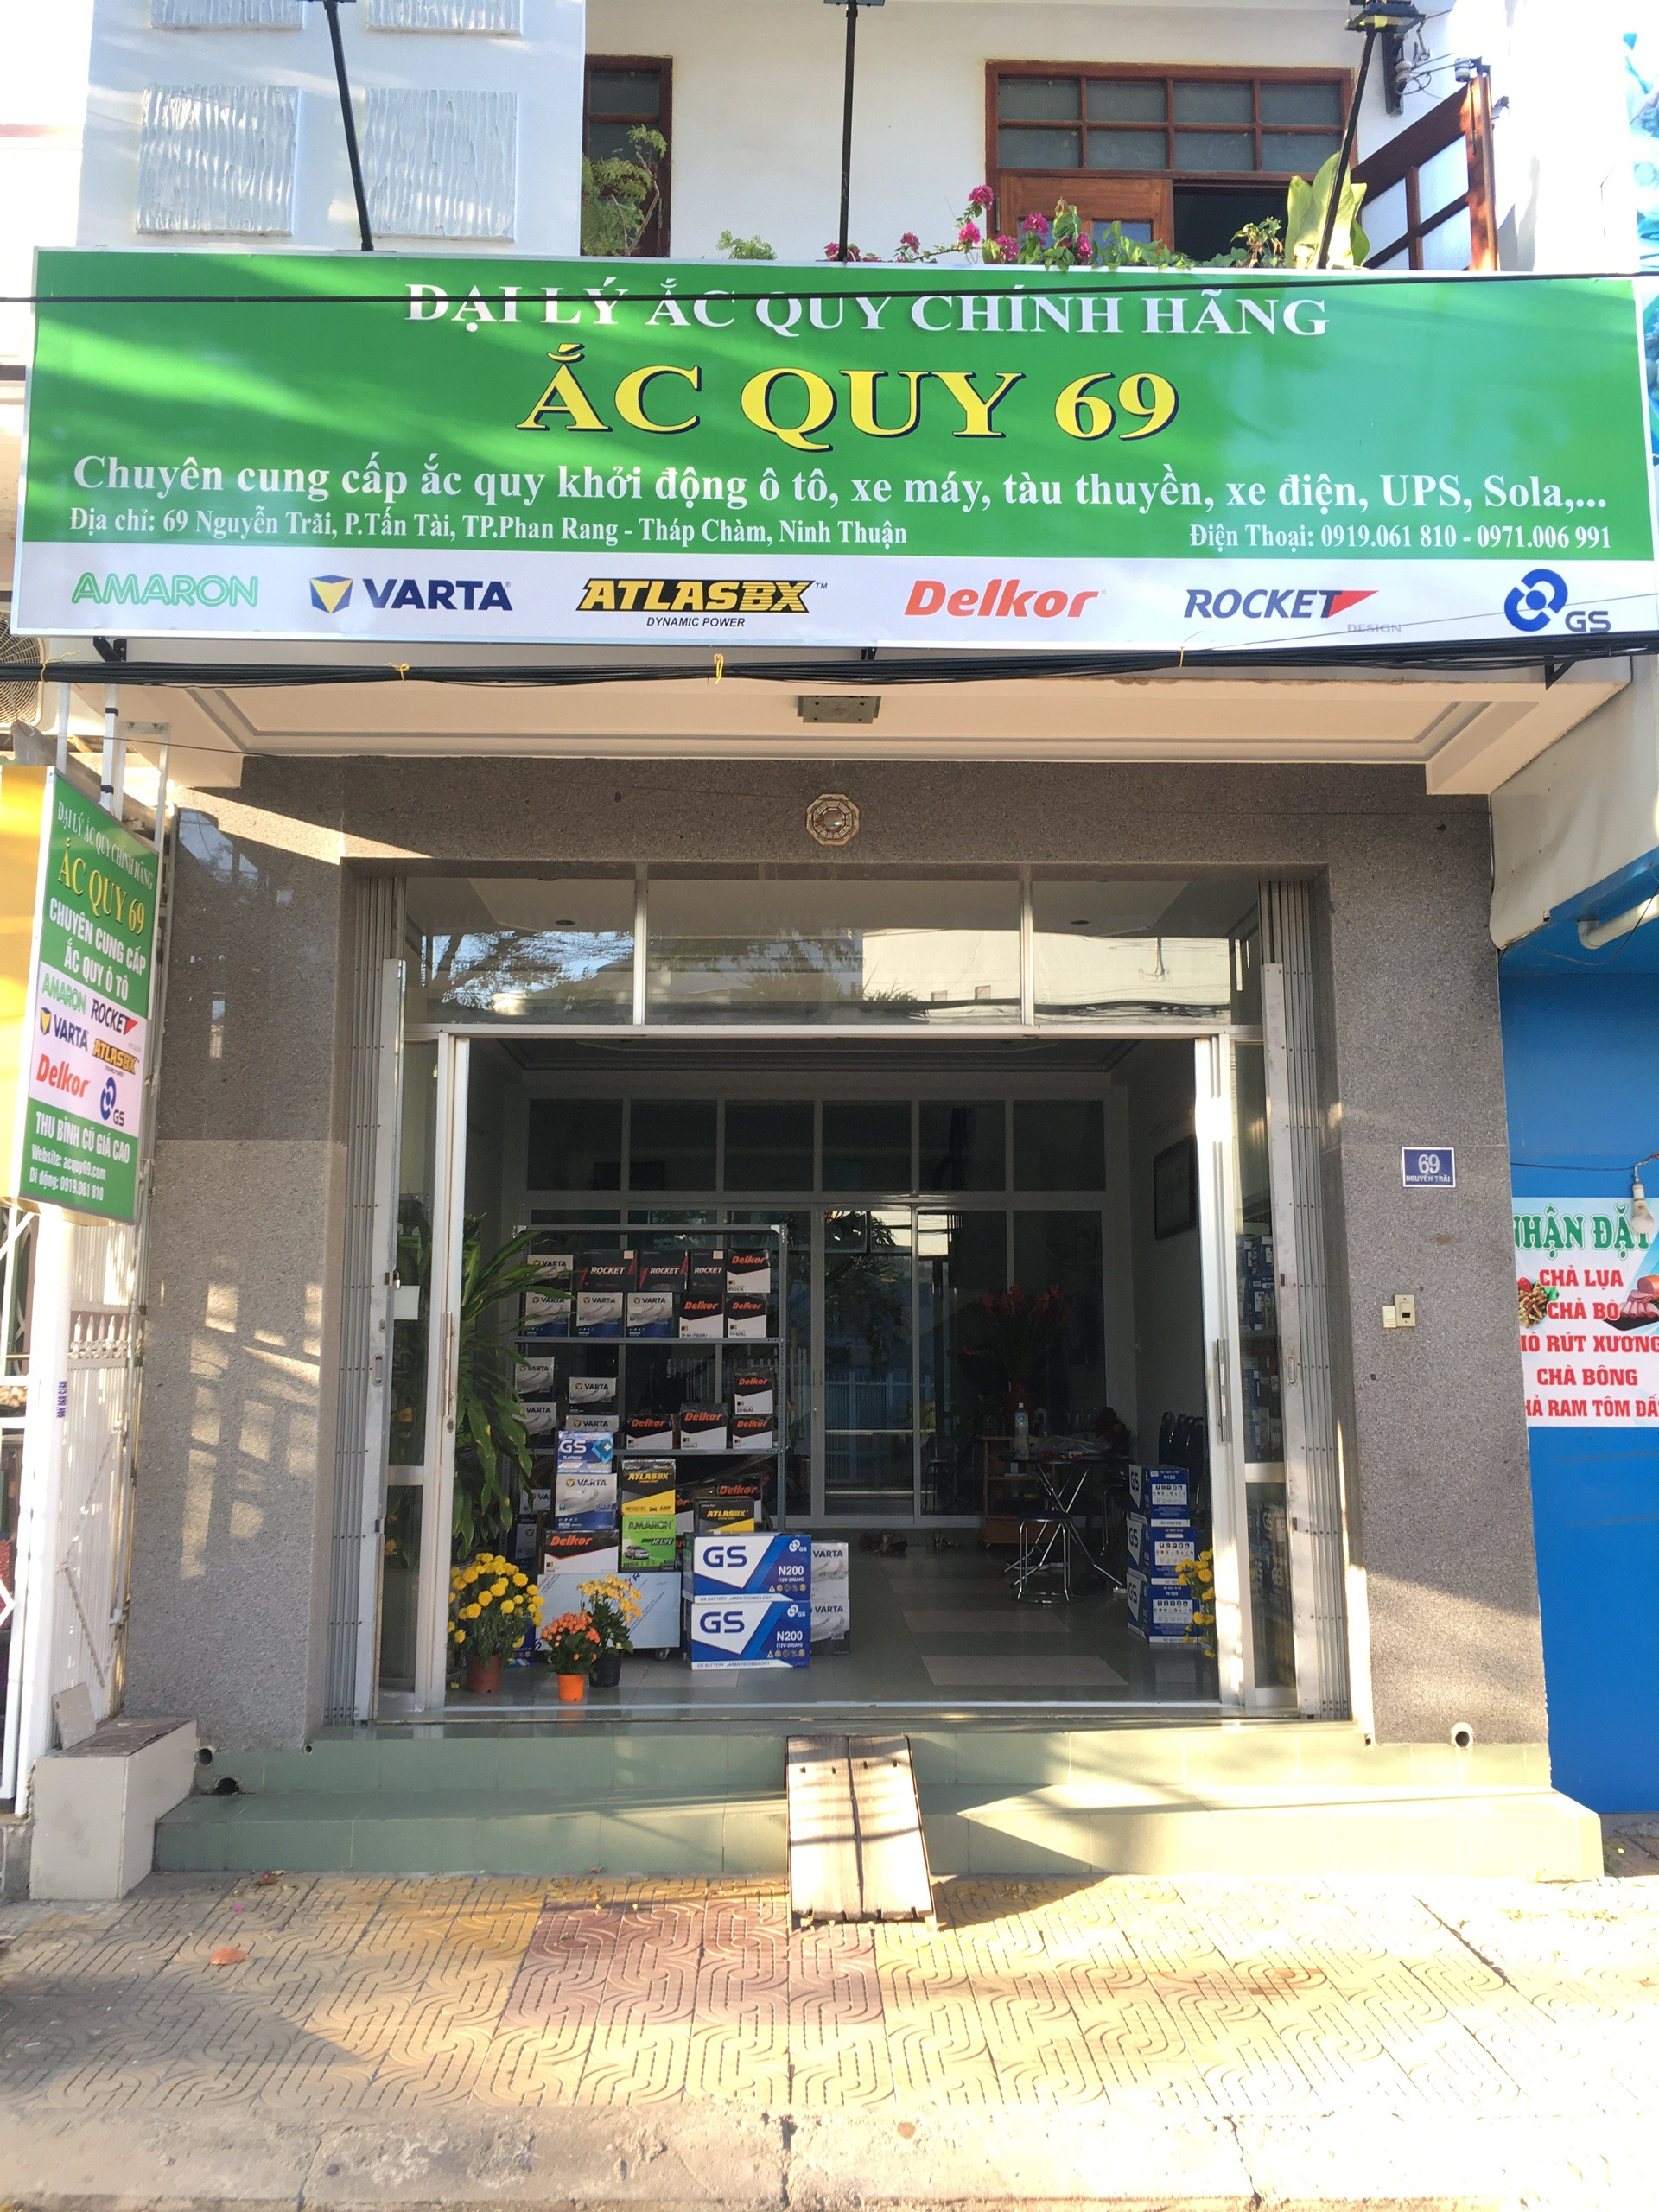 Hình ảnh cửa hàng đại lý Ắc Quy 69 Ninh Thuận